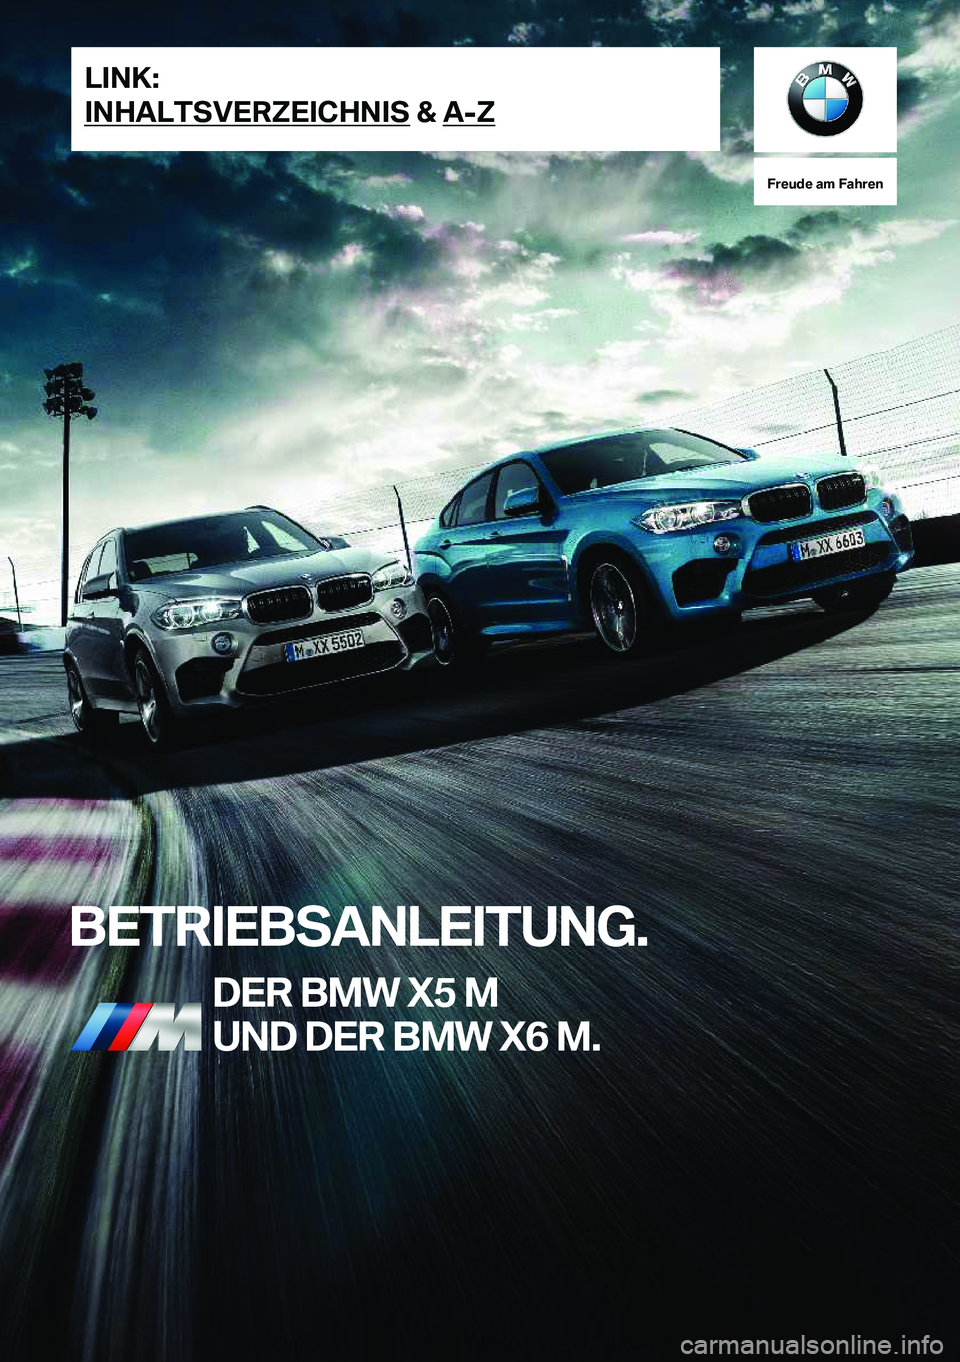 BMW X5 M 2018  Betriebsanleitungen (in German) �F�r�e�u�d�e��a�m��F�a�h�r�e�n
�B�E�T�R�I�E�B�S�A�N�L�E�I�T�U�N�G�.�D�E�R��B�M�W��X�5��M�U�N�D��D�E�R��B�M�W��X�6��M�.�L�I�N�K�:
�I�N�H�A�L�T�S�V�E�R�Z�E�I�C�H�N�I�S��&��A�-�Z�O�n�l�i�n�e� 